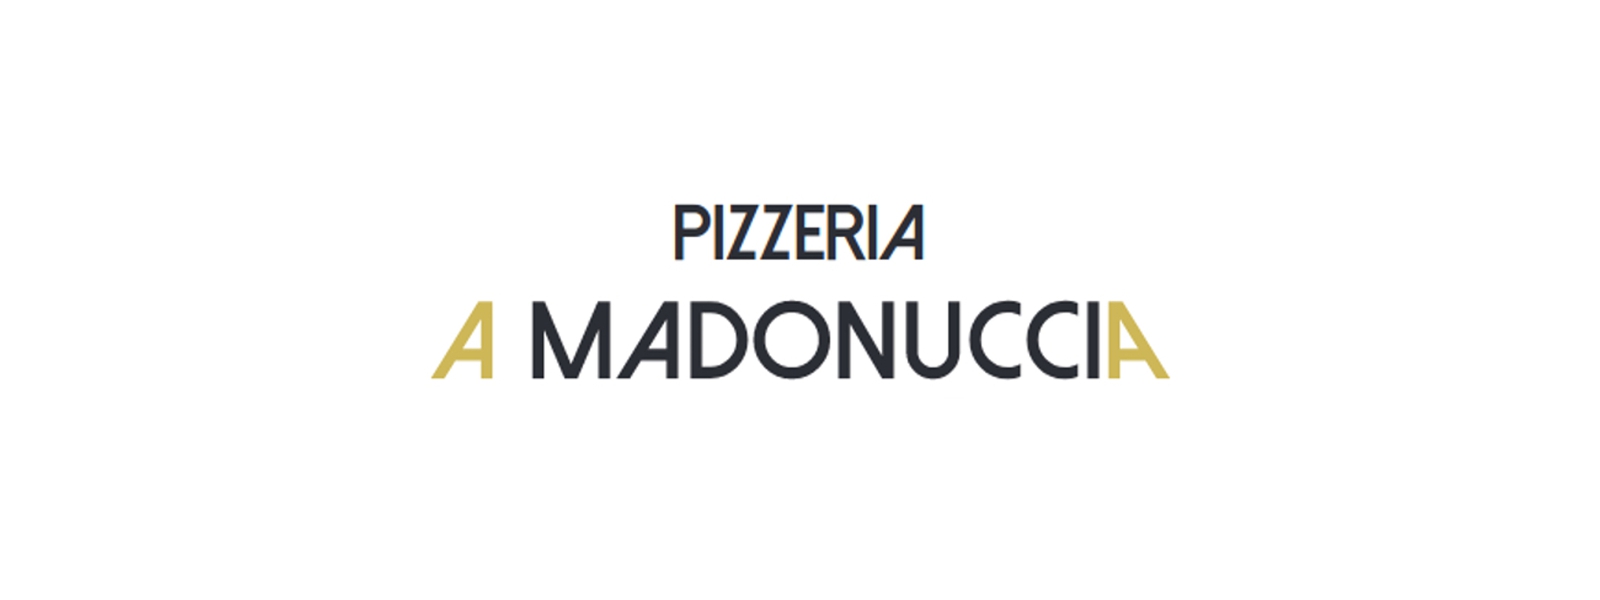 Pizzeria À Madonuccia image header